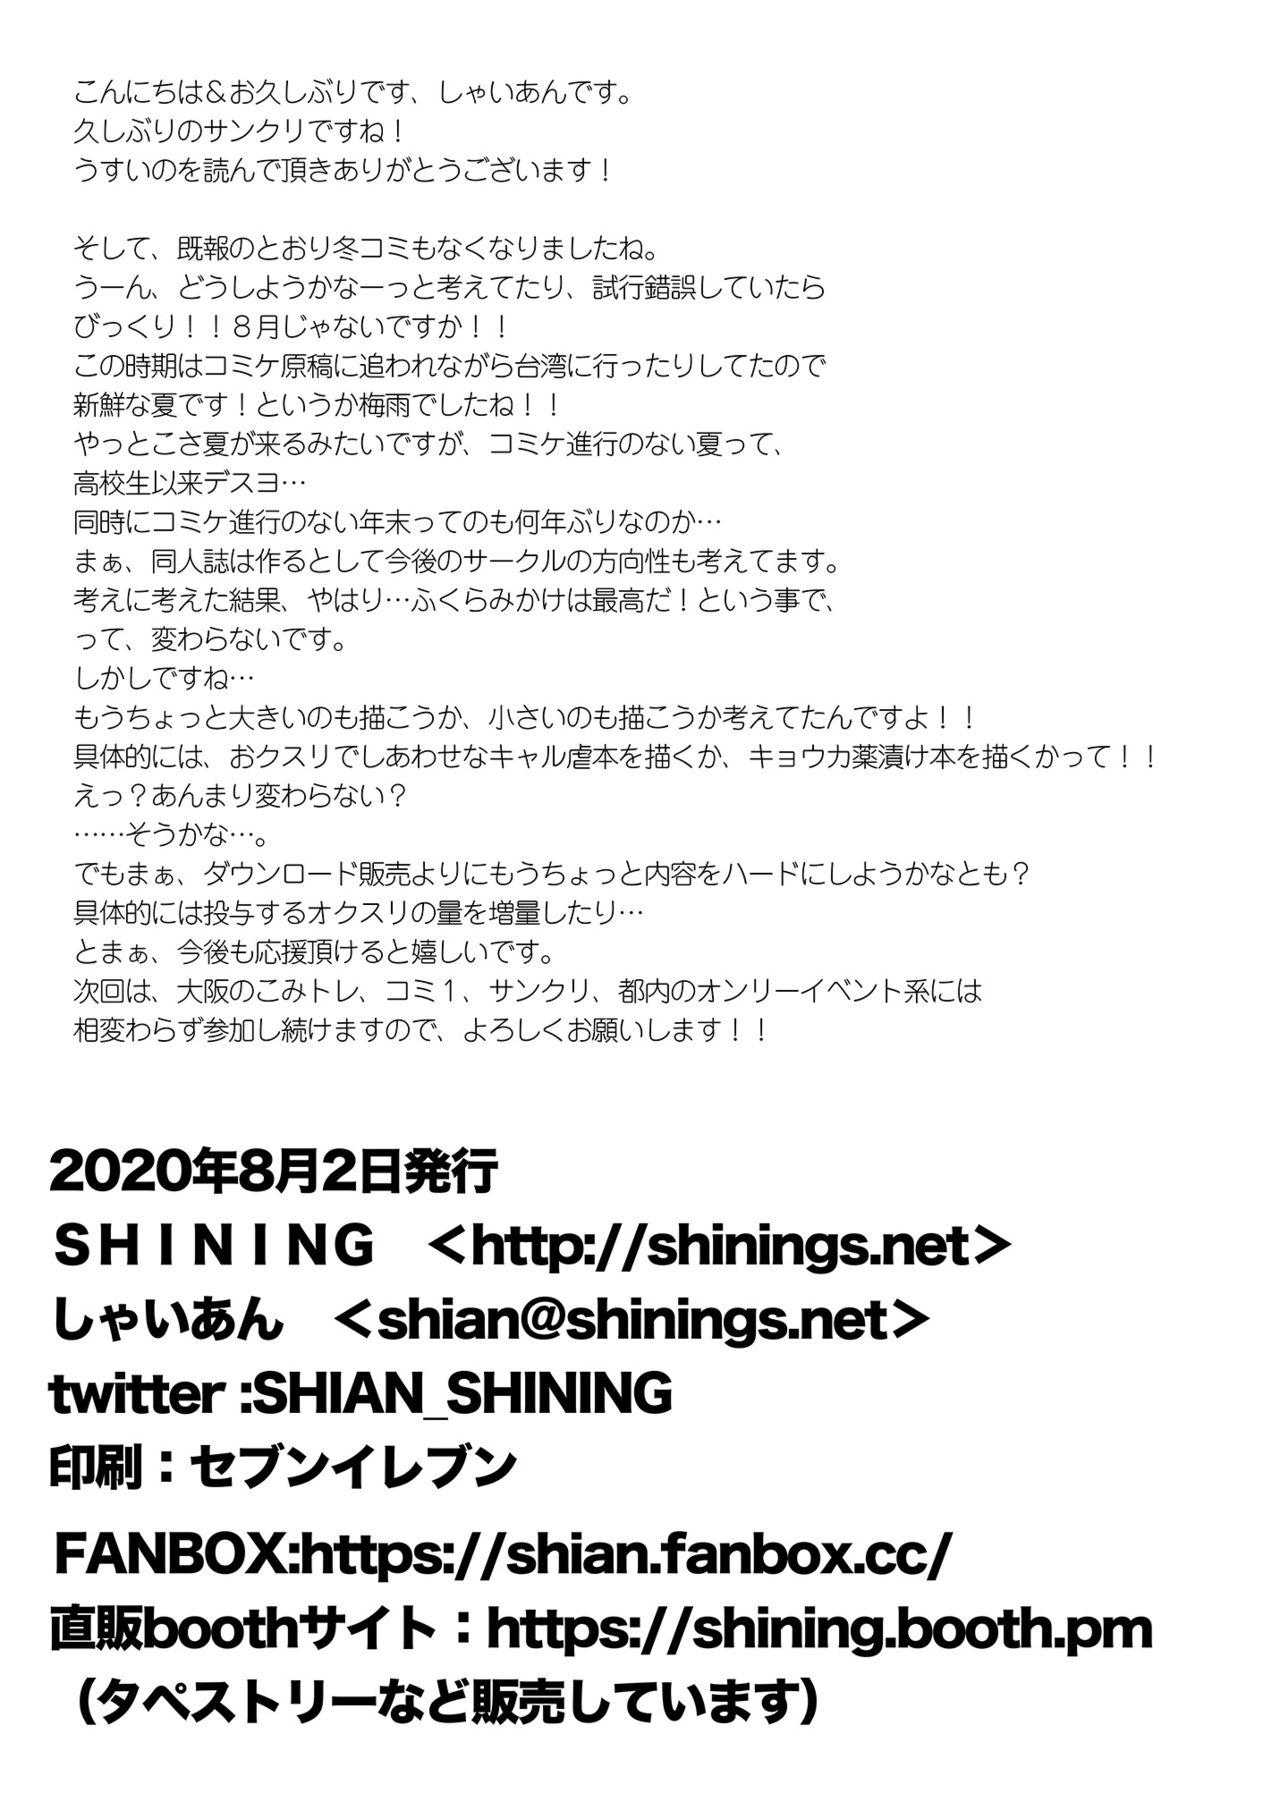 SHINING EXPRESS SC202008 8